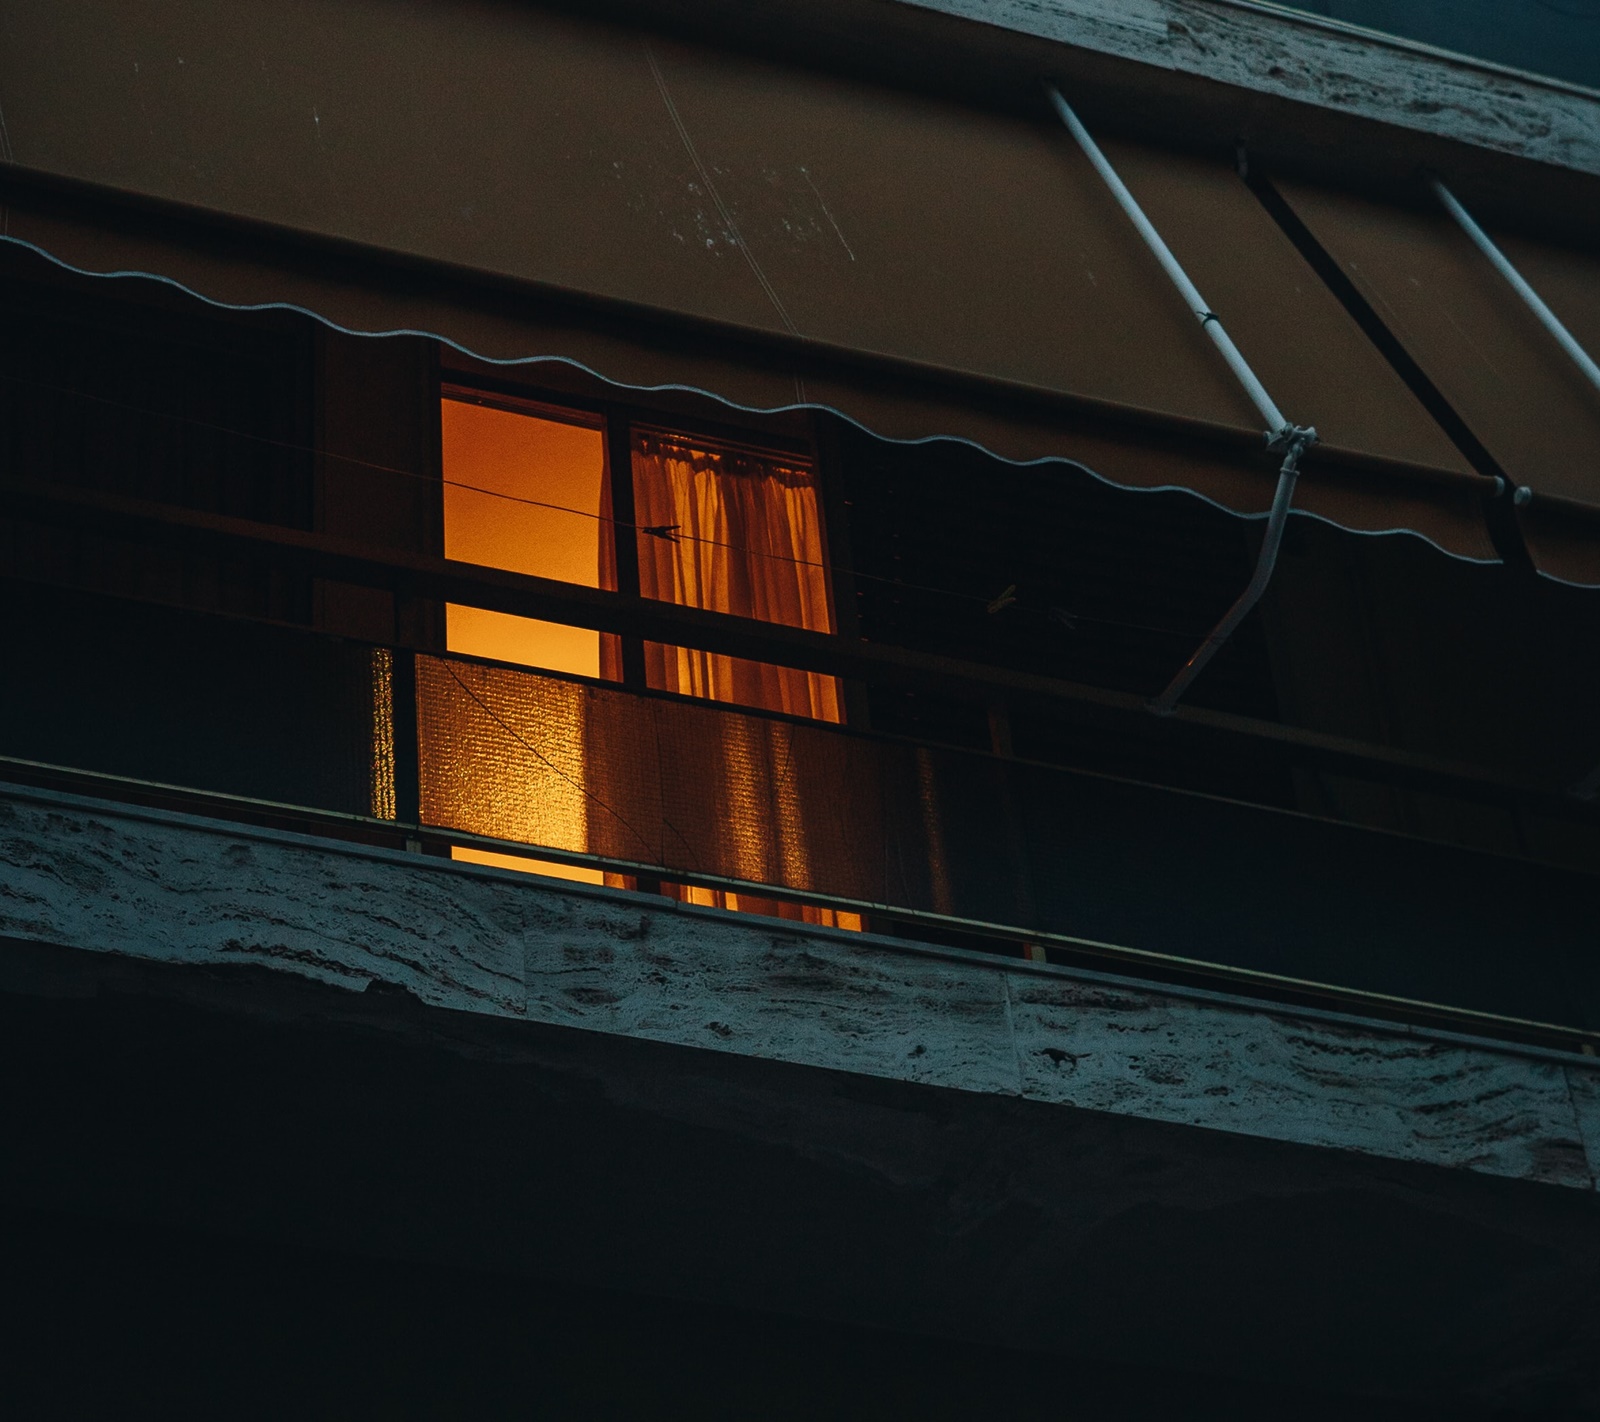 Νέα Σμύρνη ληστεία: Εισέβαλαν με μαχαίρια σε διαμέρισμα ηλικιωμένου ζευγαριού